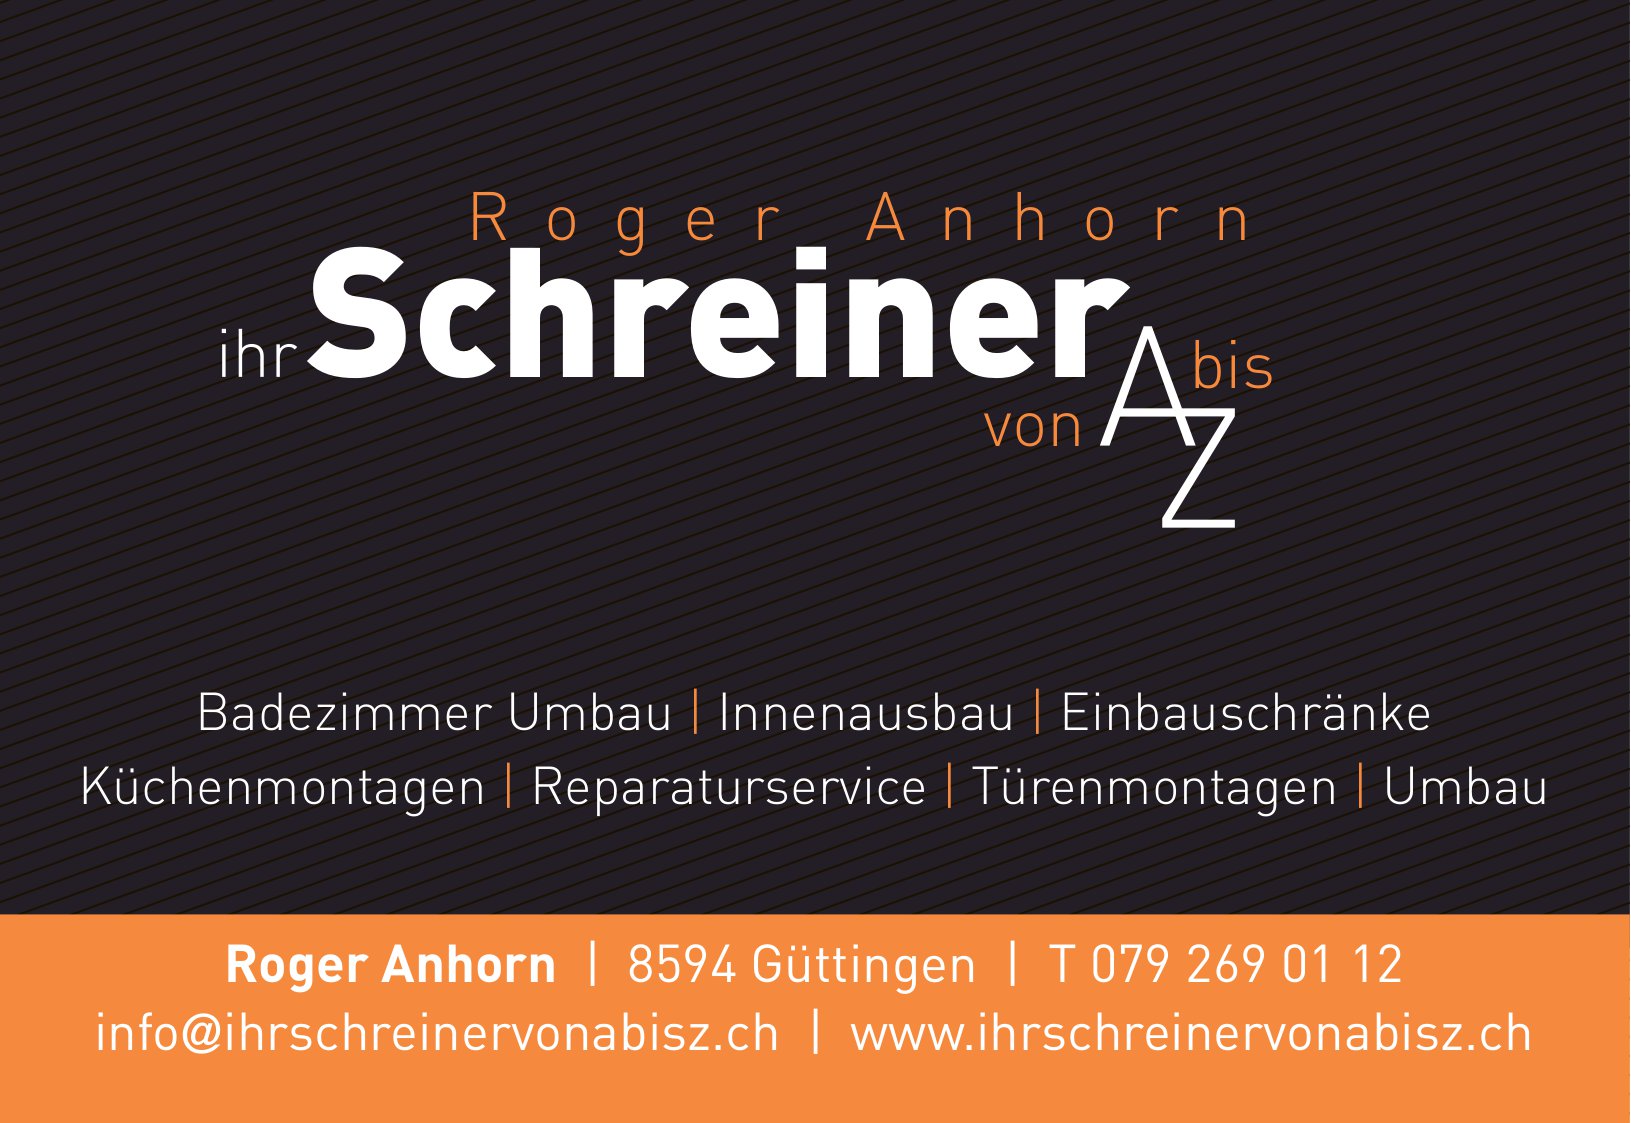 Roger Anhorn, Güttingen - ihr Schreiner von A bis Z